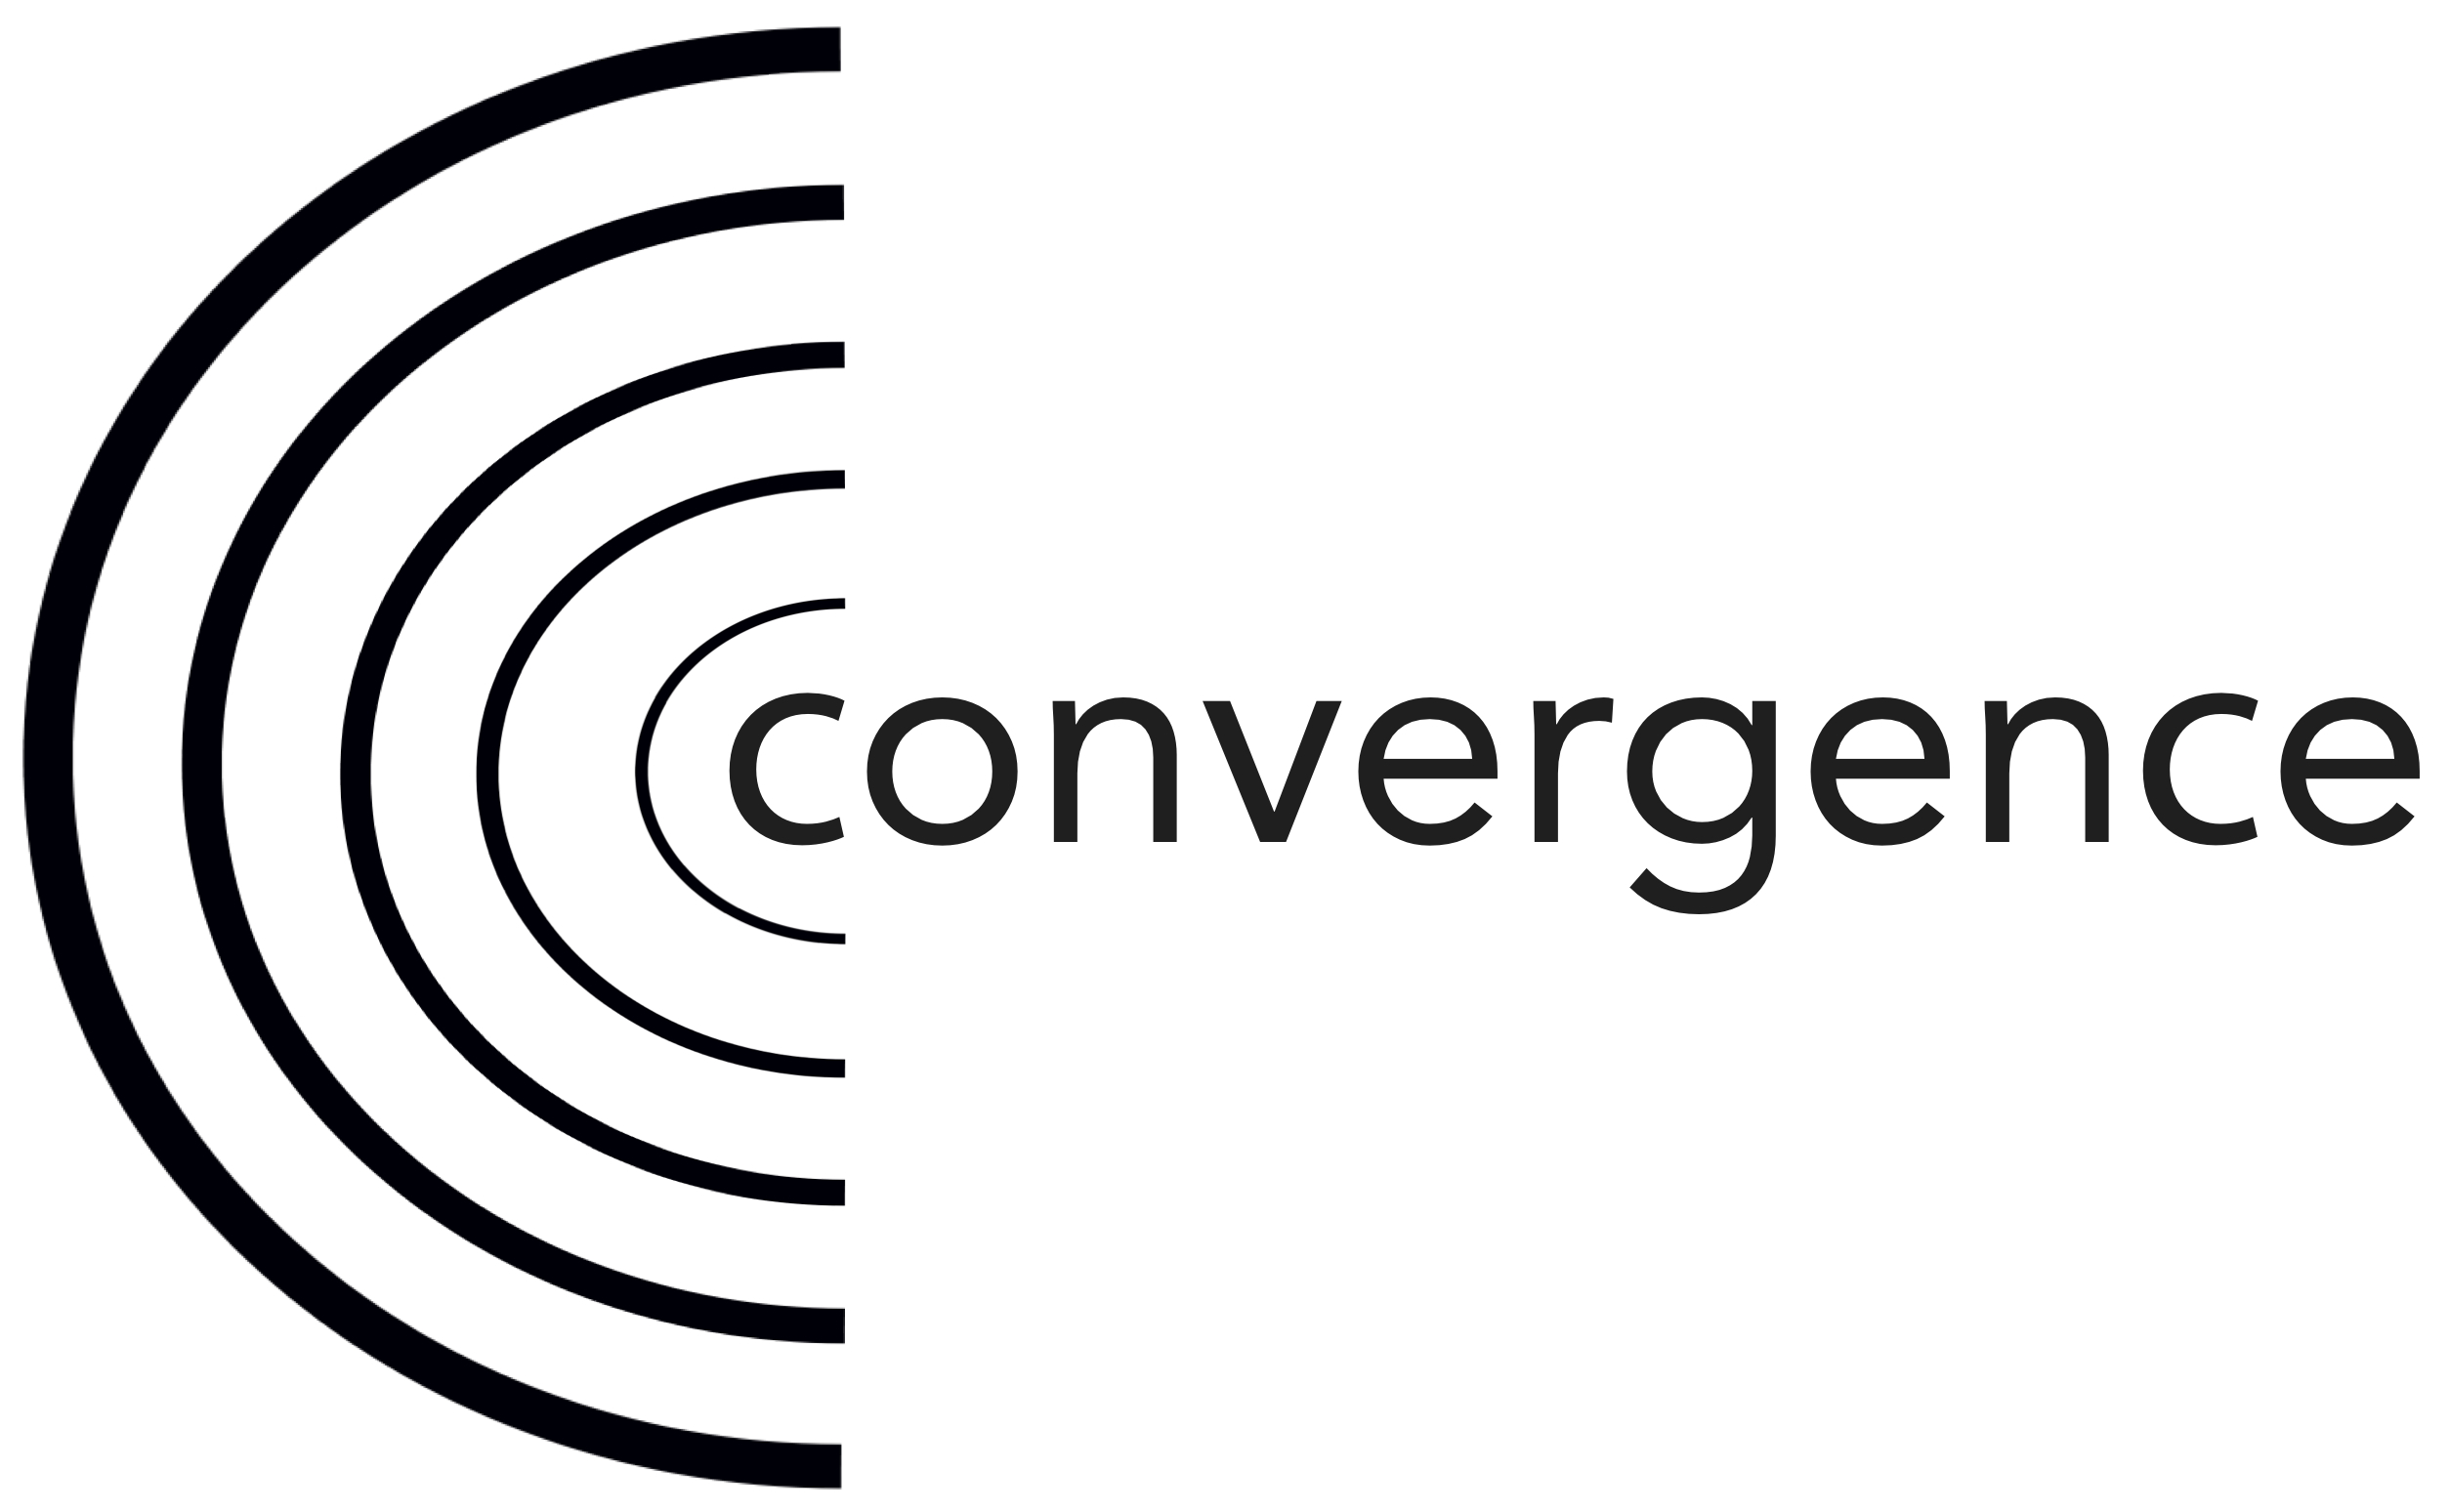 Convergence 2022